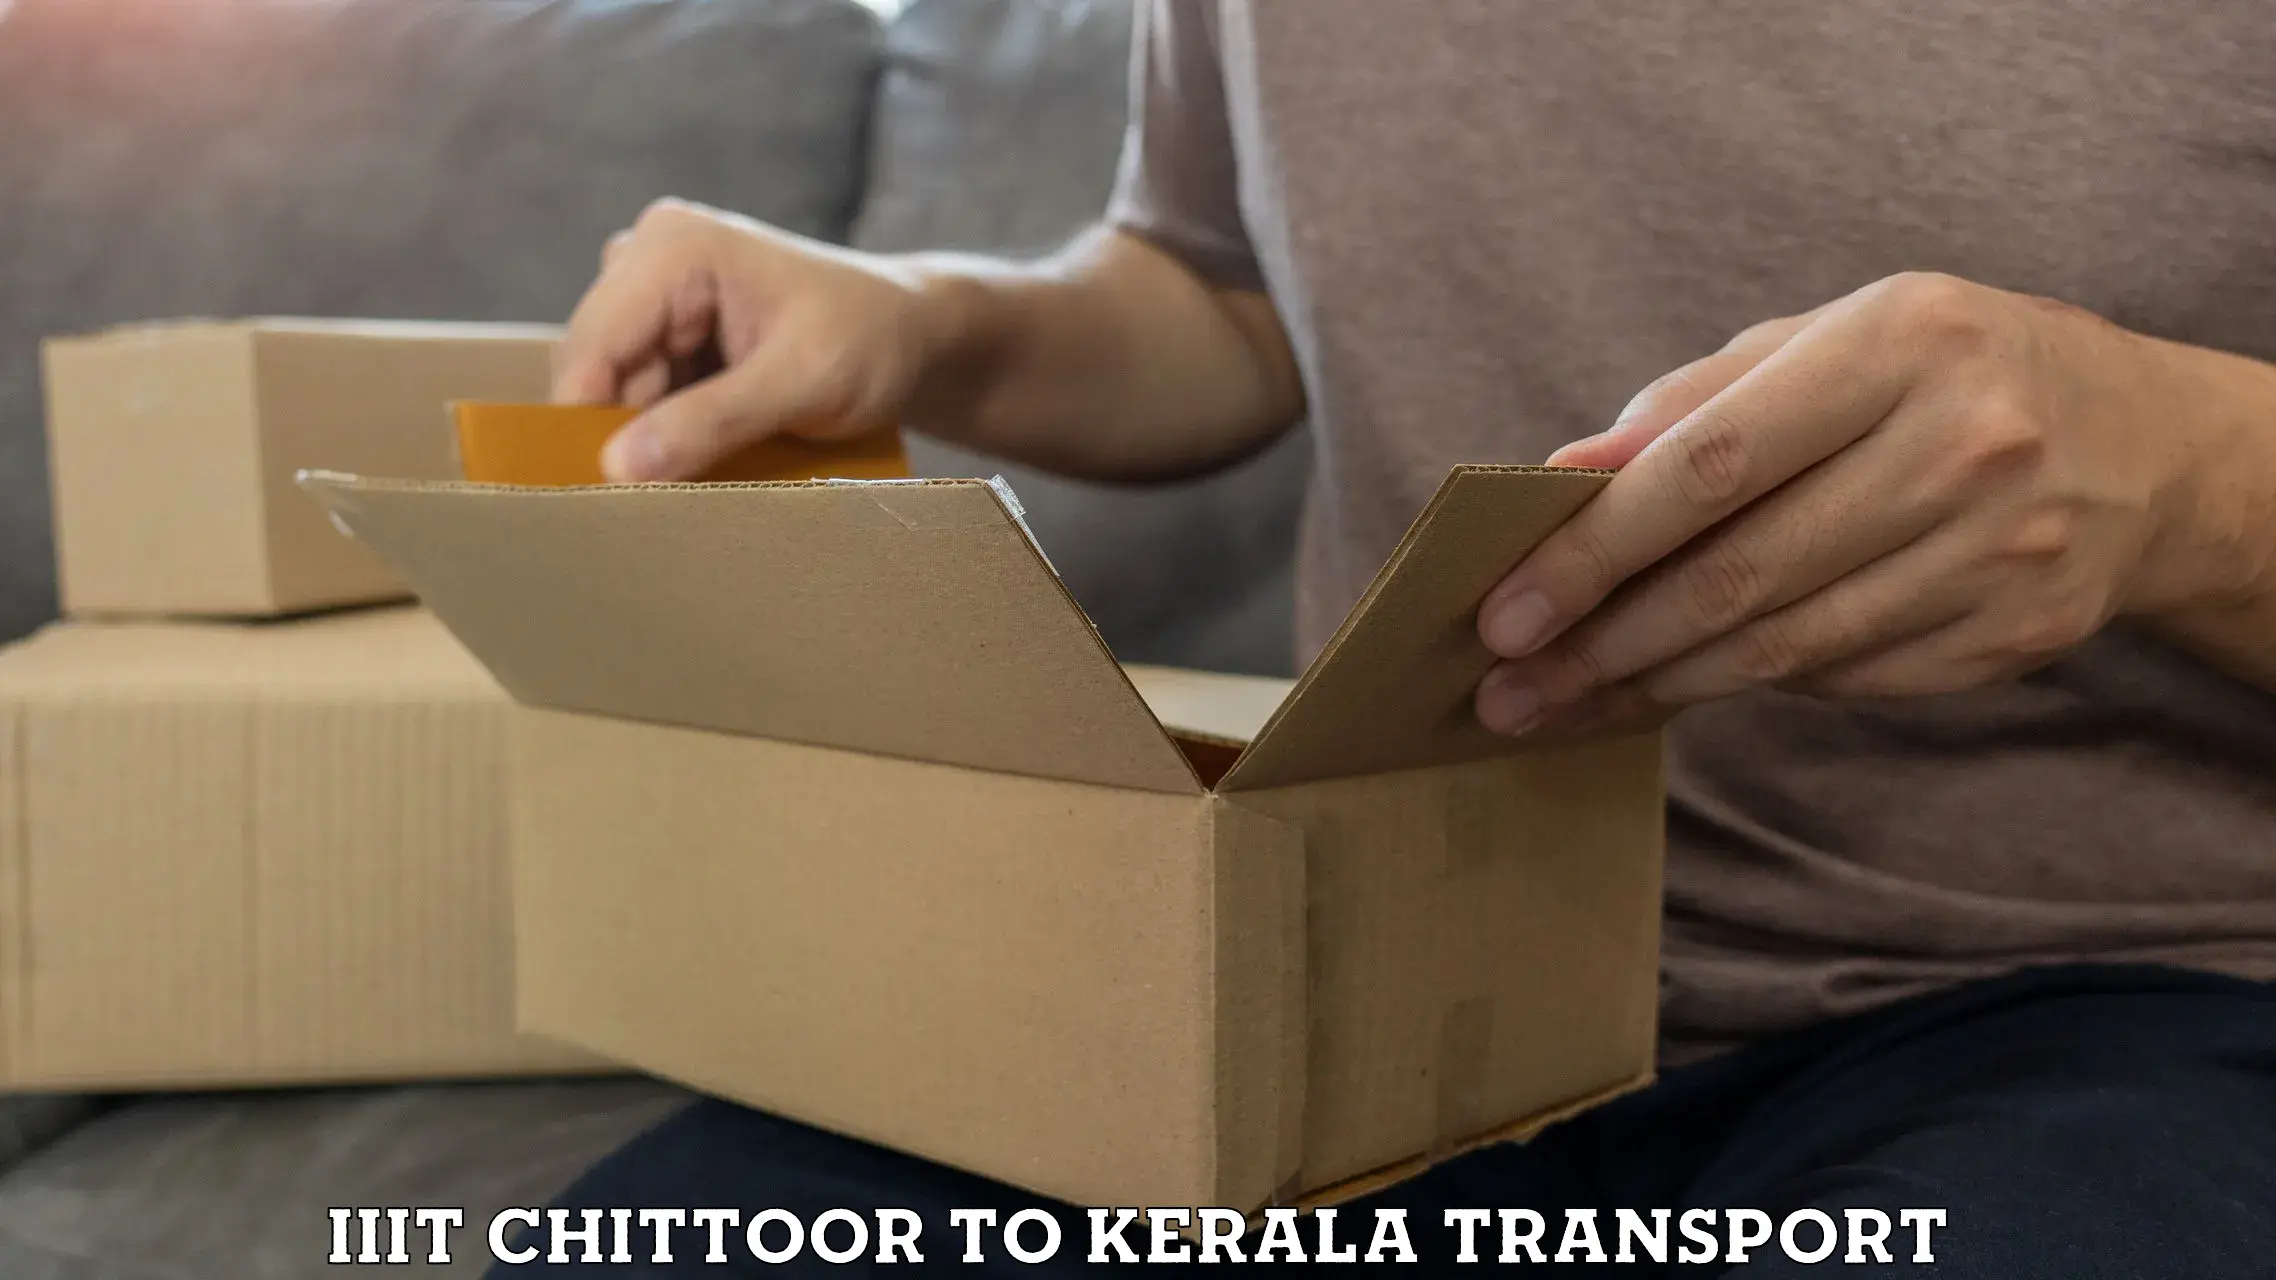 Nearest transport service IIIT Chittoor to Guruvayoor